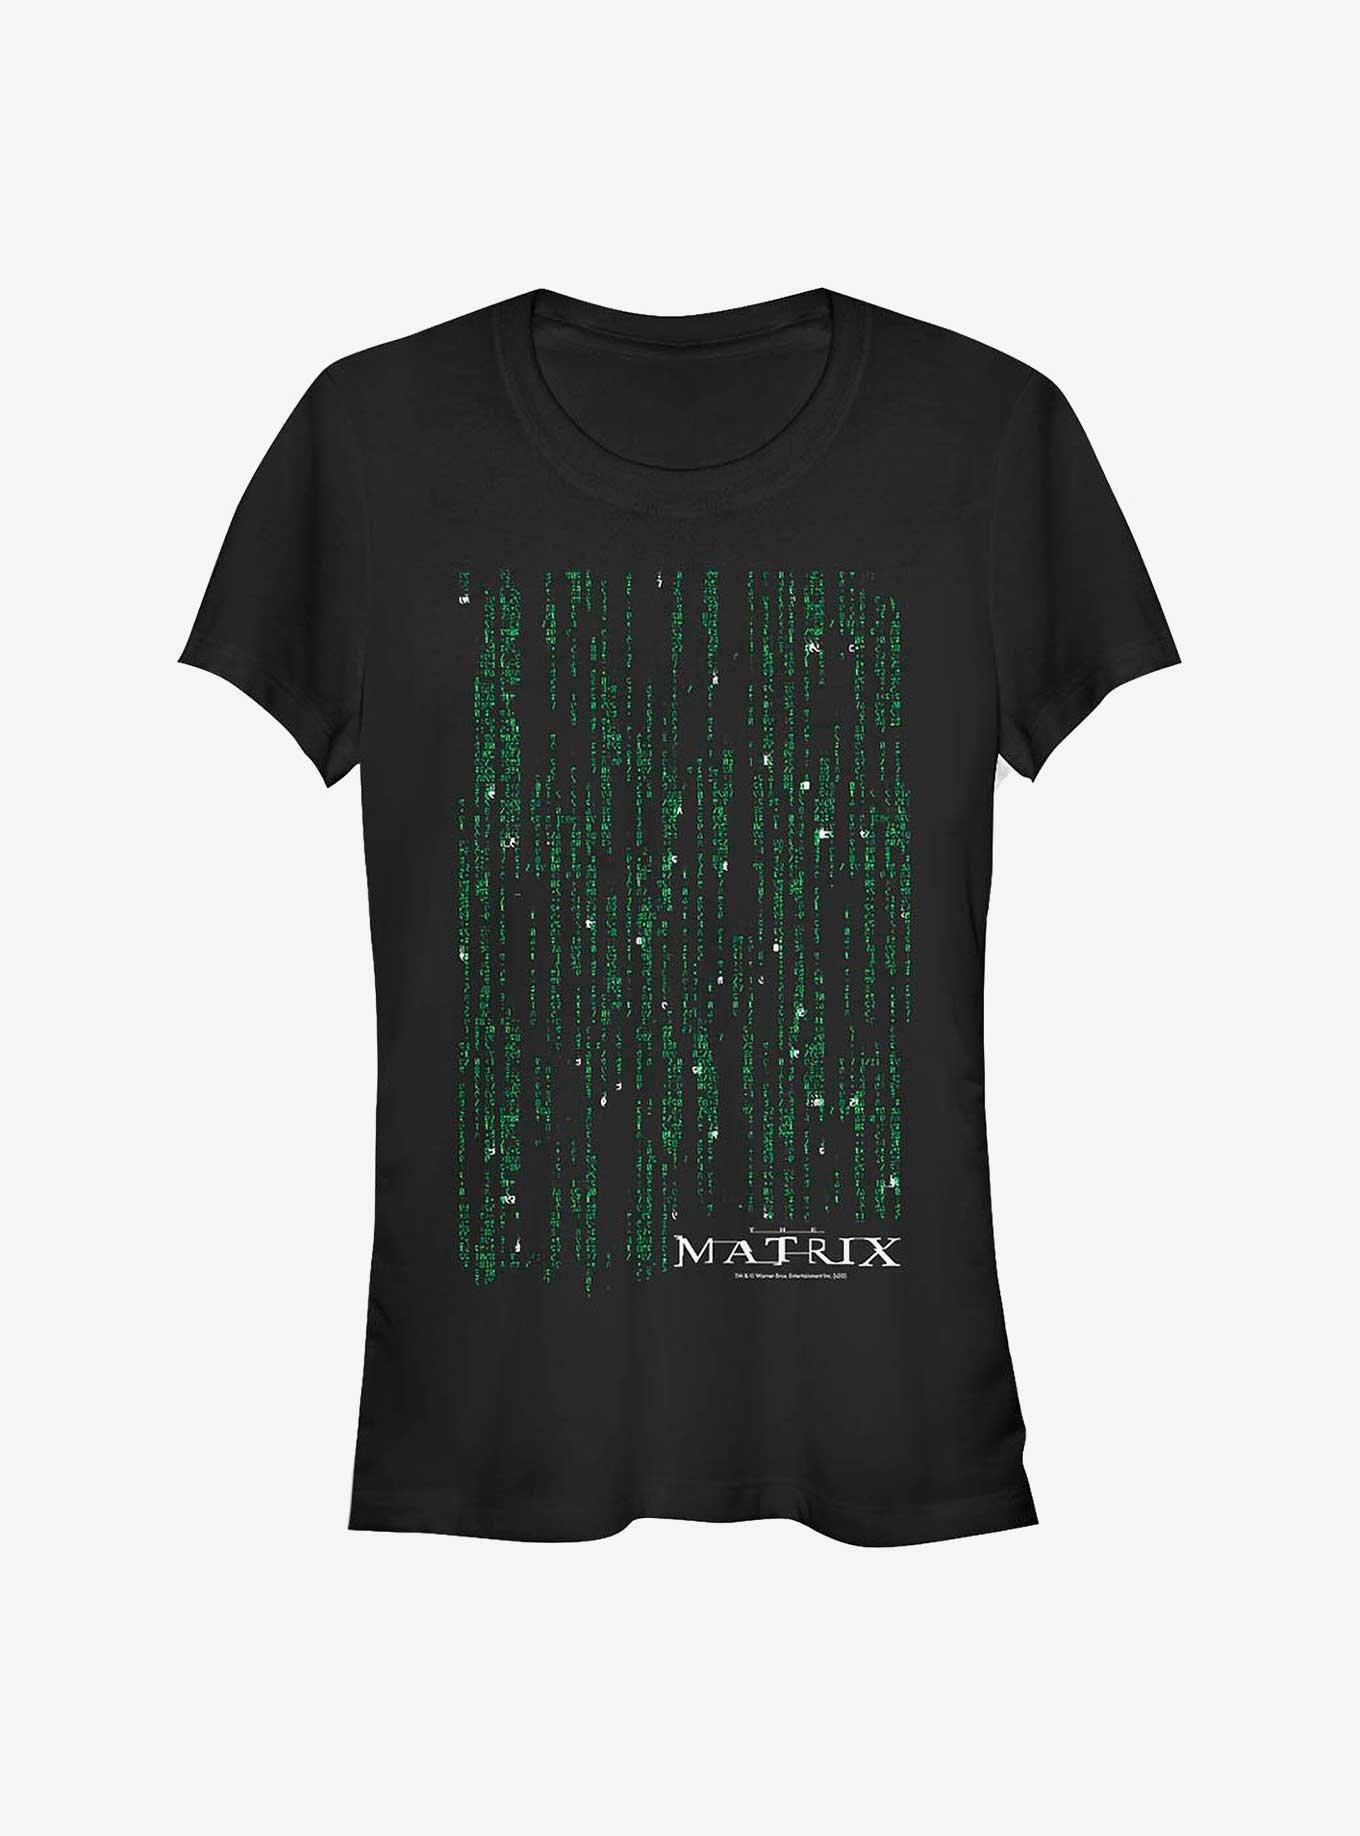 The Matrix Encyrpted Girls T-Shirt